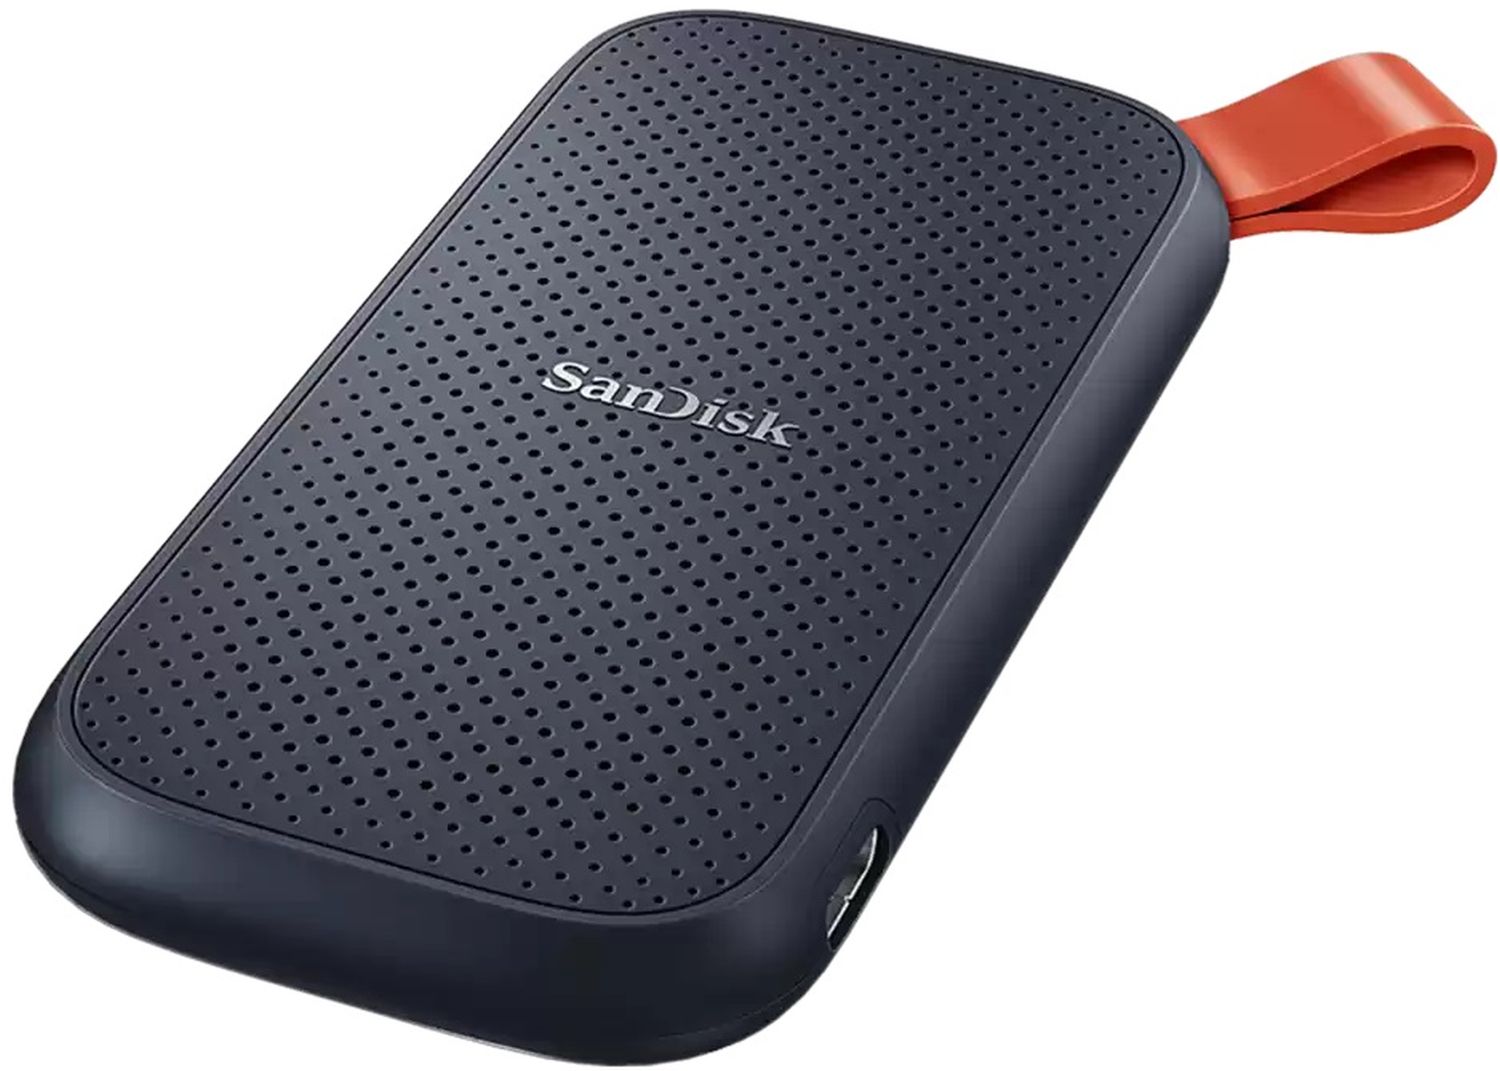 SanDisk Portable SSD 1TB 800MB/s - Foto Erhardt